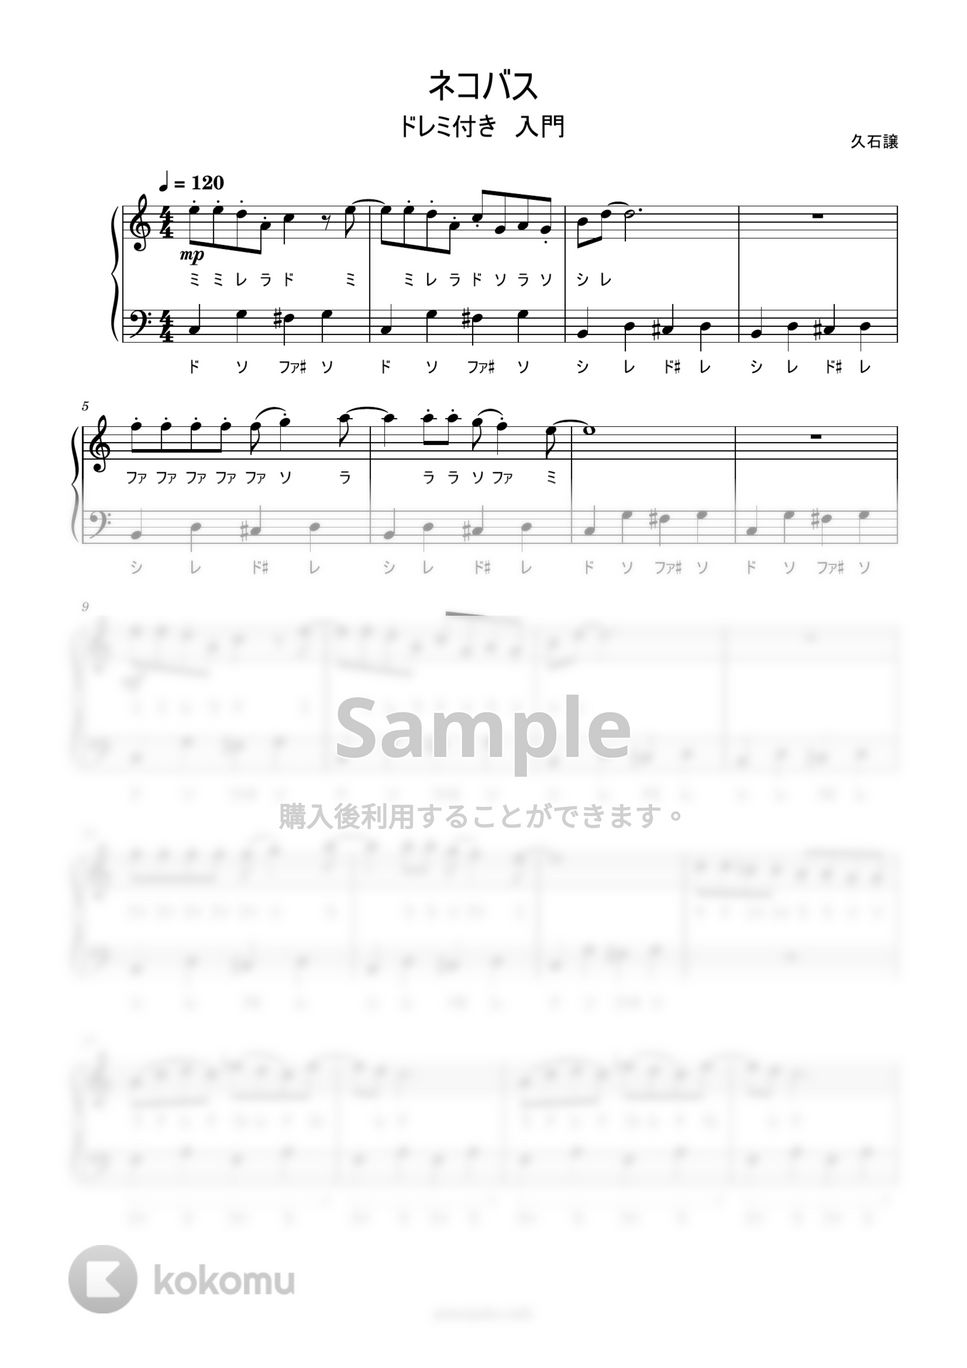 久石譲 - ねこバス (ドレミ付き簡単楽譜) by ピアノ塾